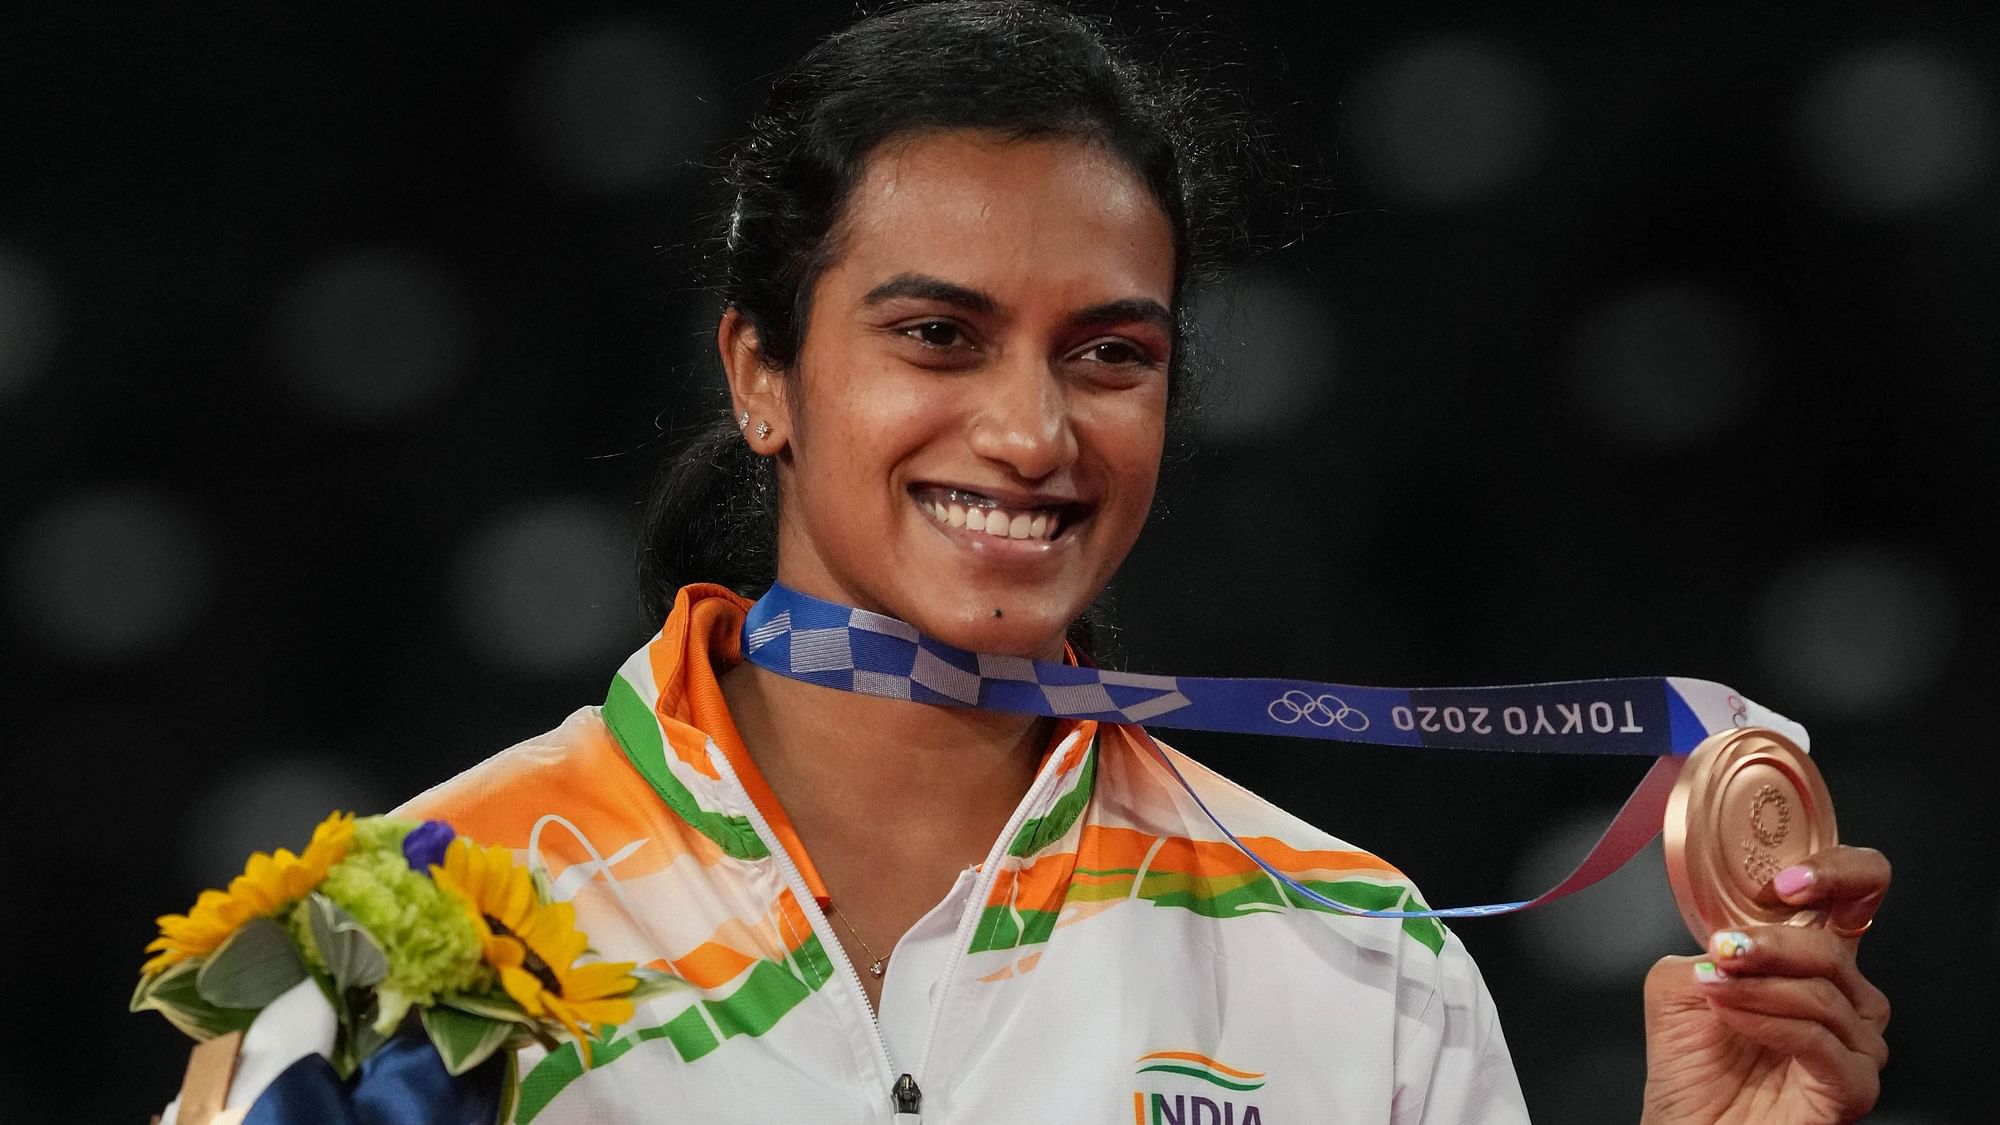 <div class="paragraphs"><p>Tokyo Olympics में पीवी सिंधु ने कांस्य पदक जीता</p></div>